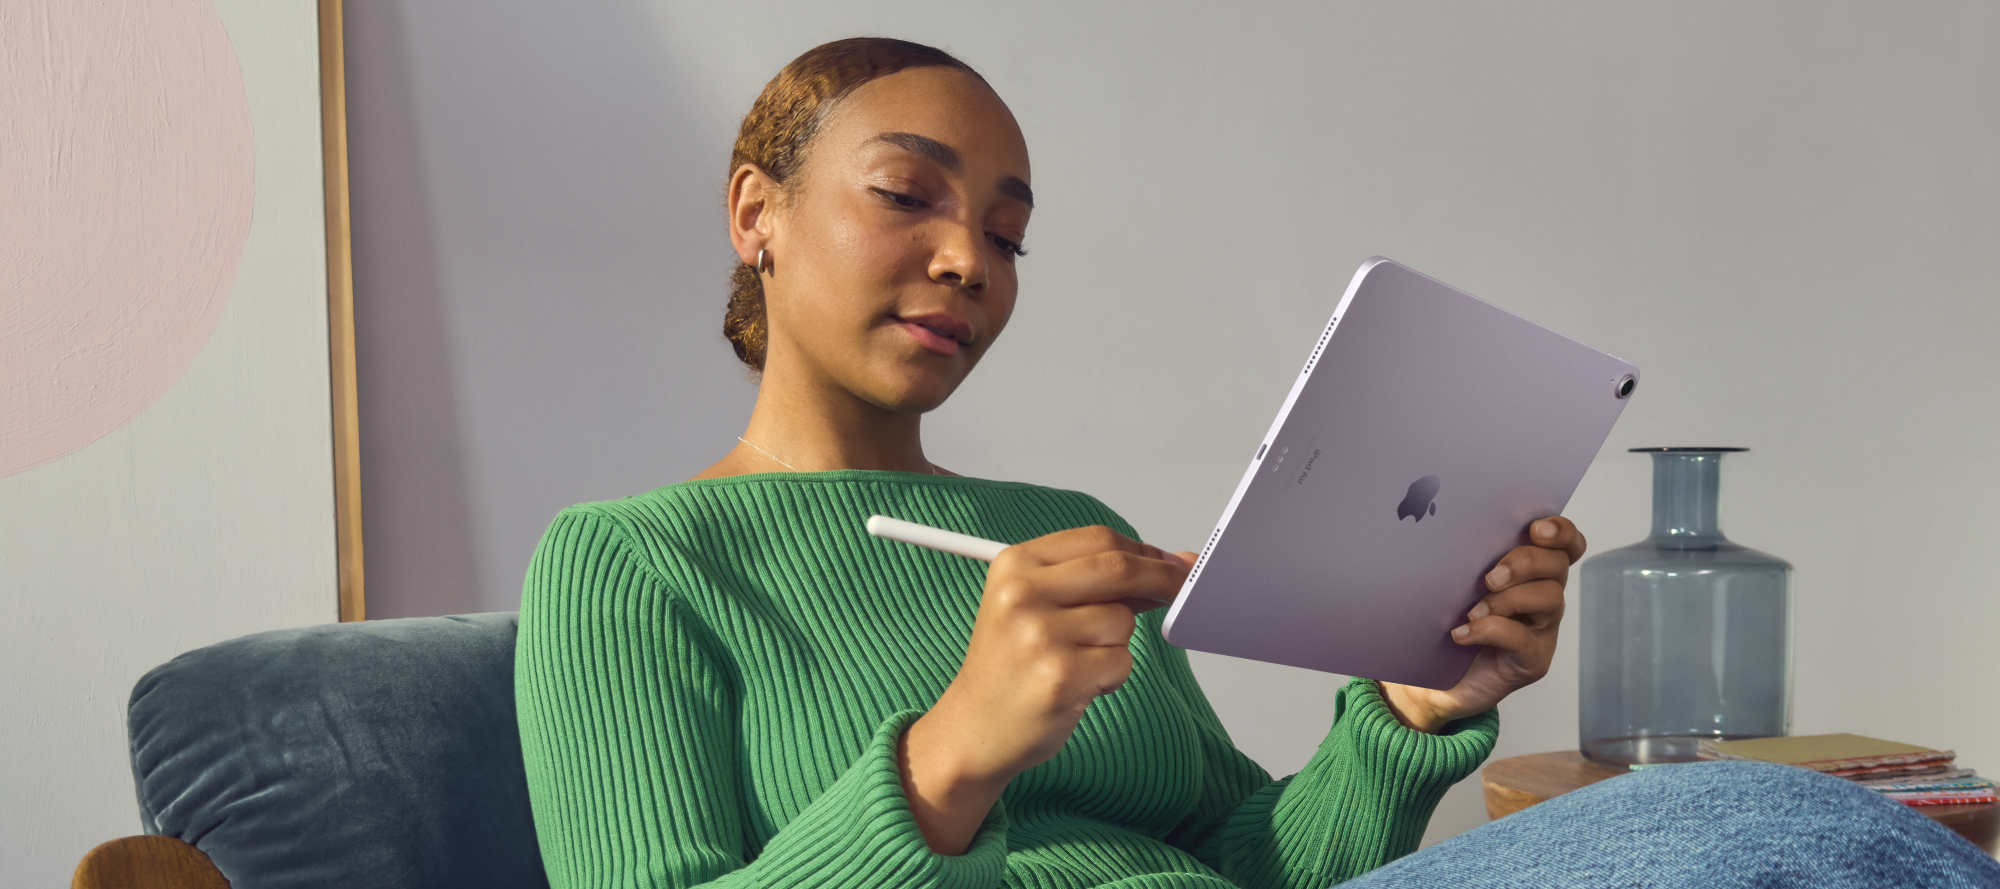 Esittelyssä uudet Apple iPad Air (M2) -tabletit